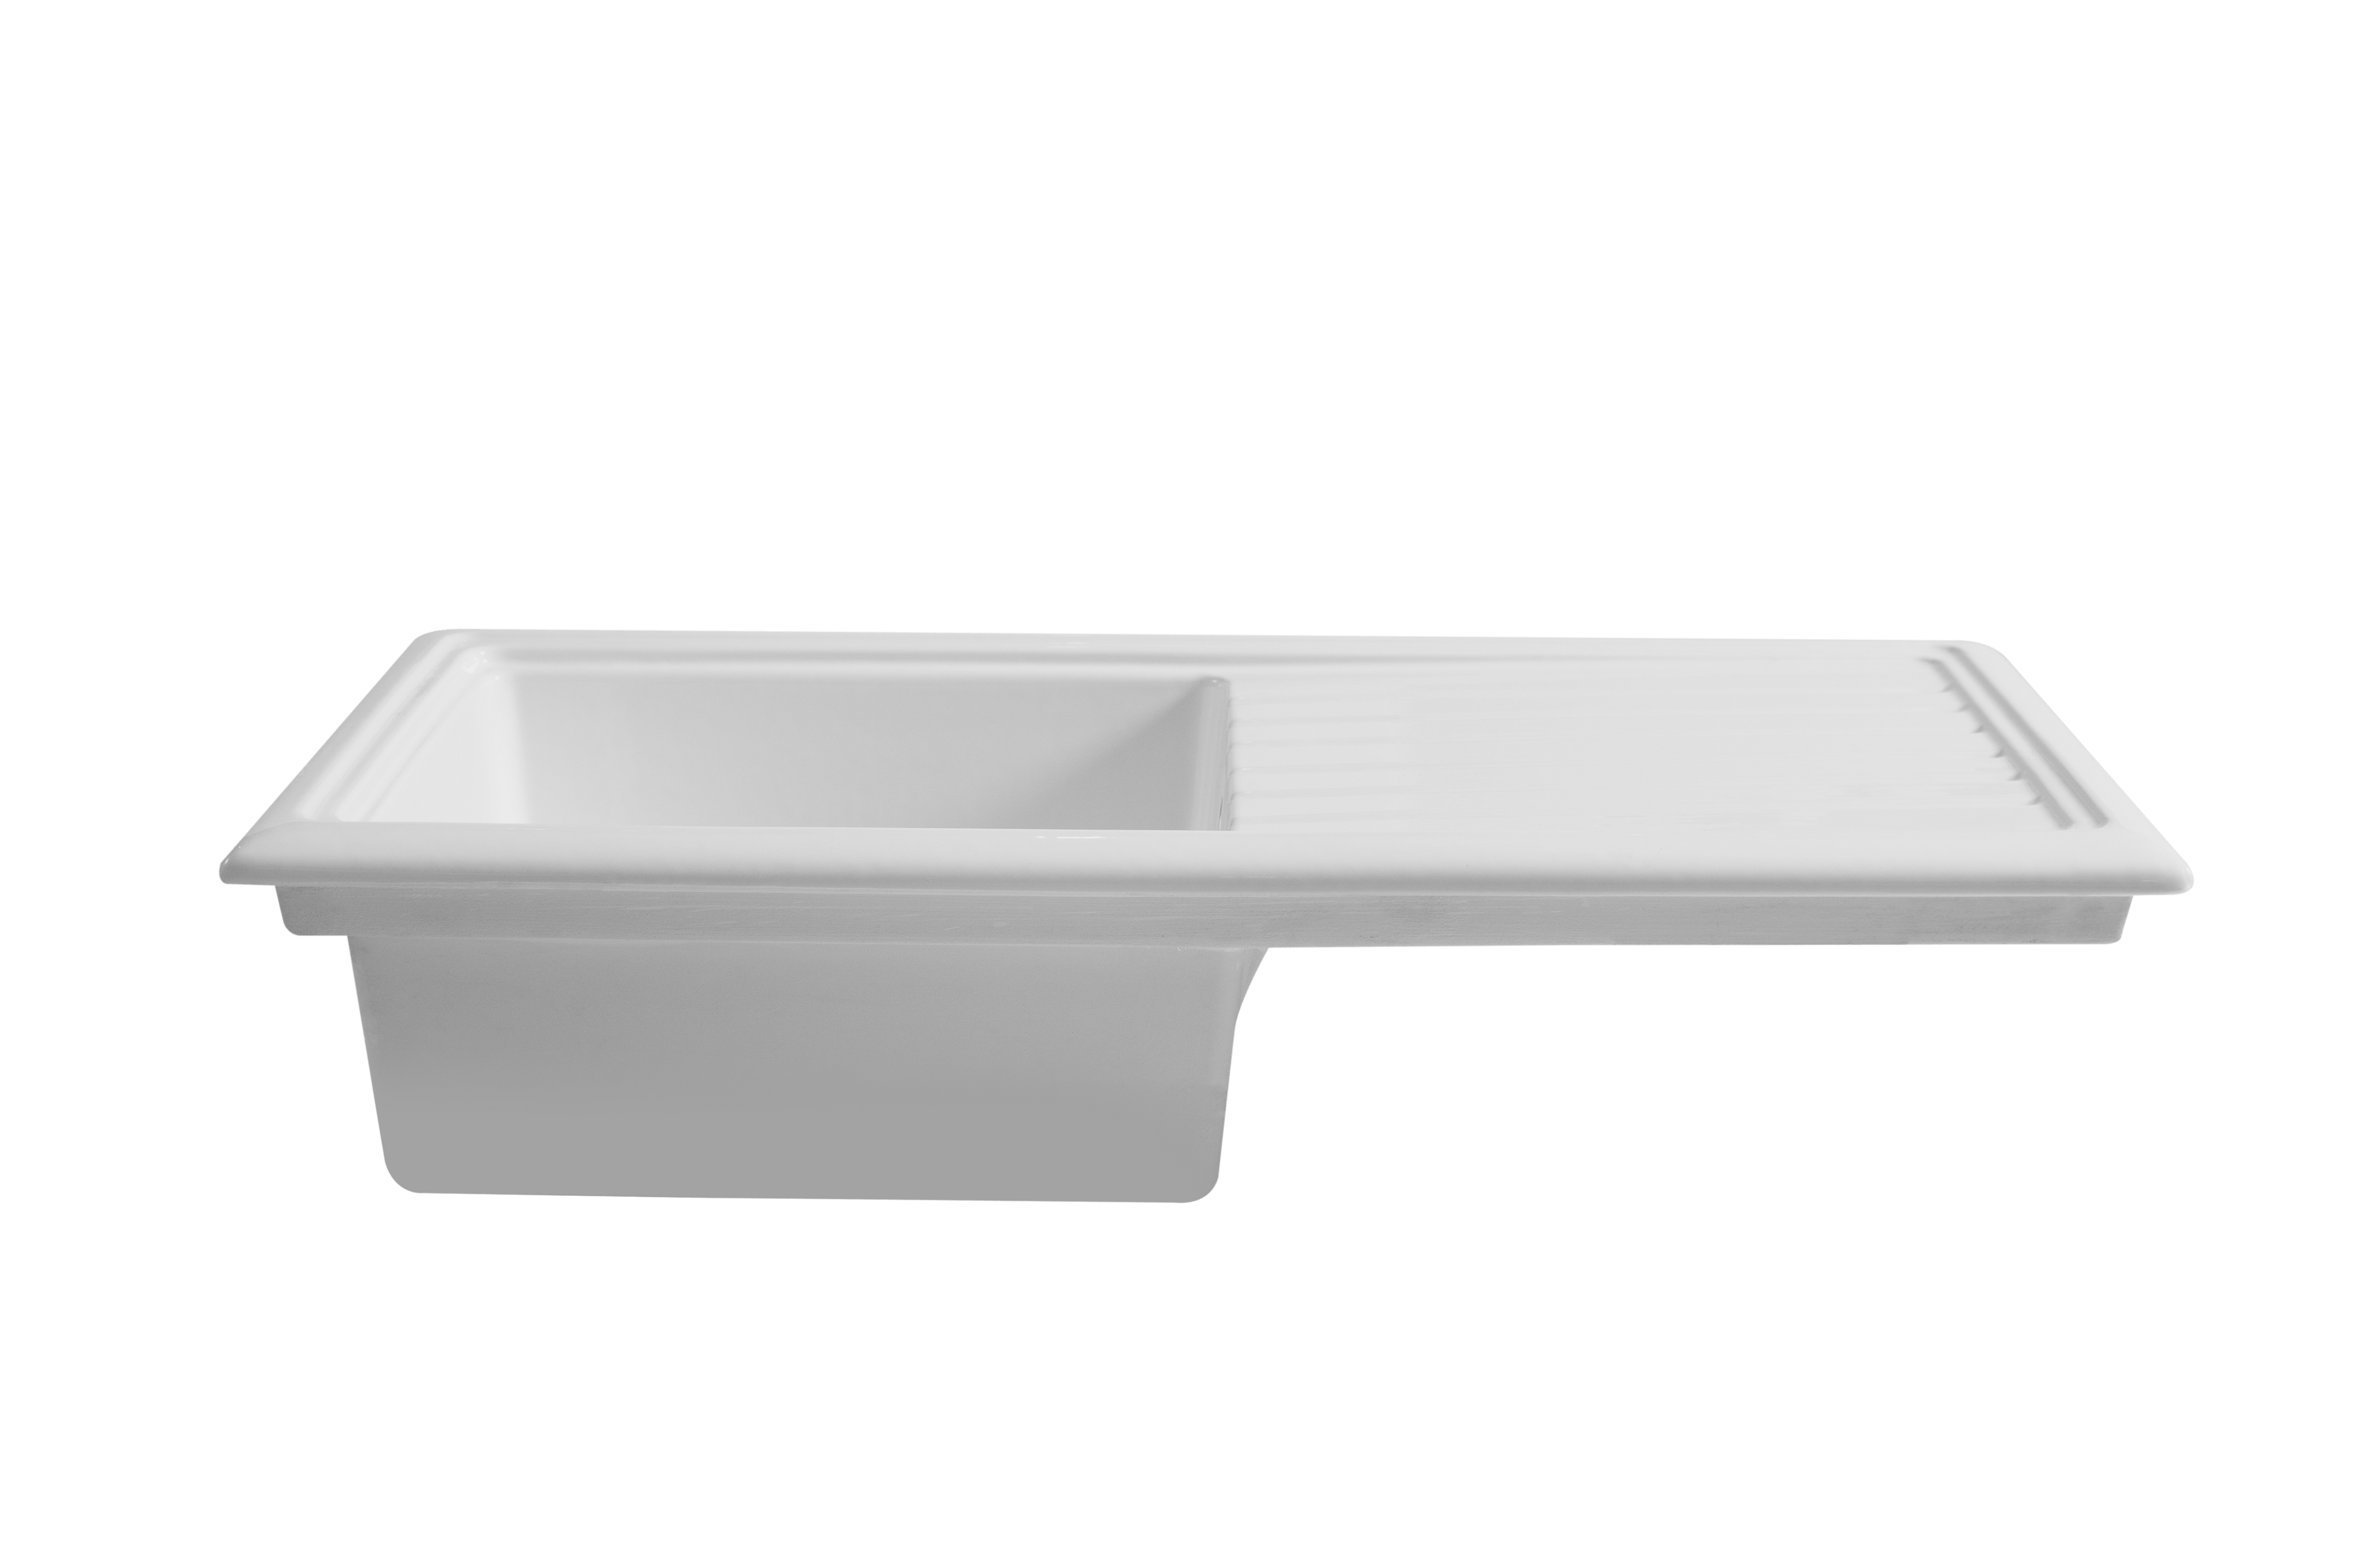 ceramic kitchen sink versus stainless steel